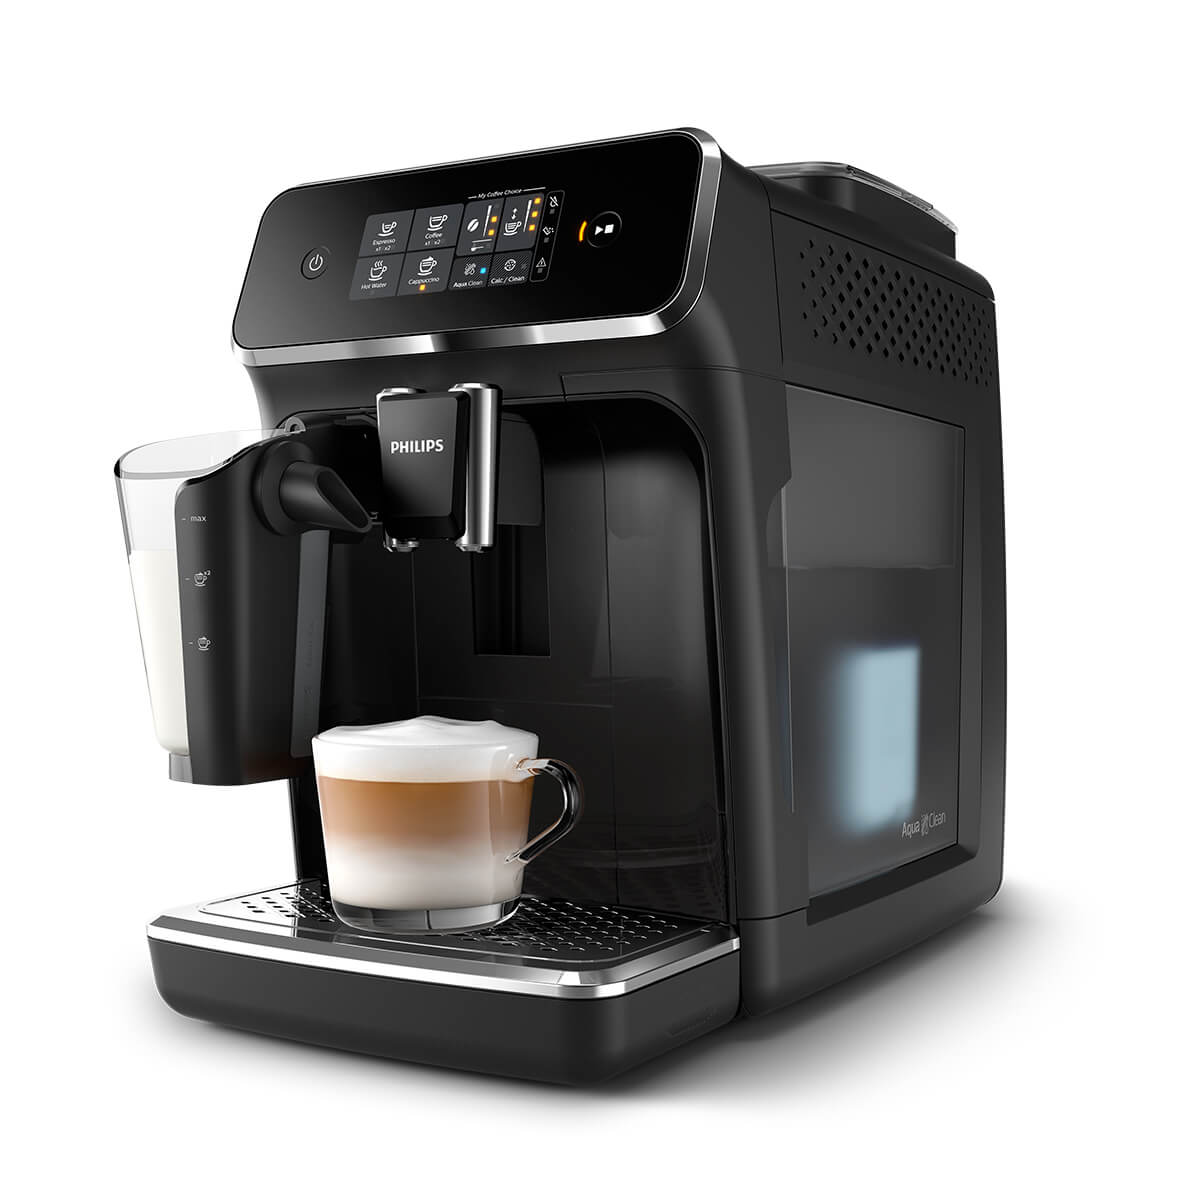 飛利浦全自動義式咖啡機一鍵完成研磨、萃取、奶泡，輕鬆體驗新鮮咖啡豆難以抗拒的風味與香氣。